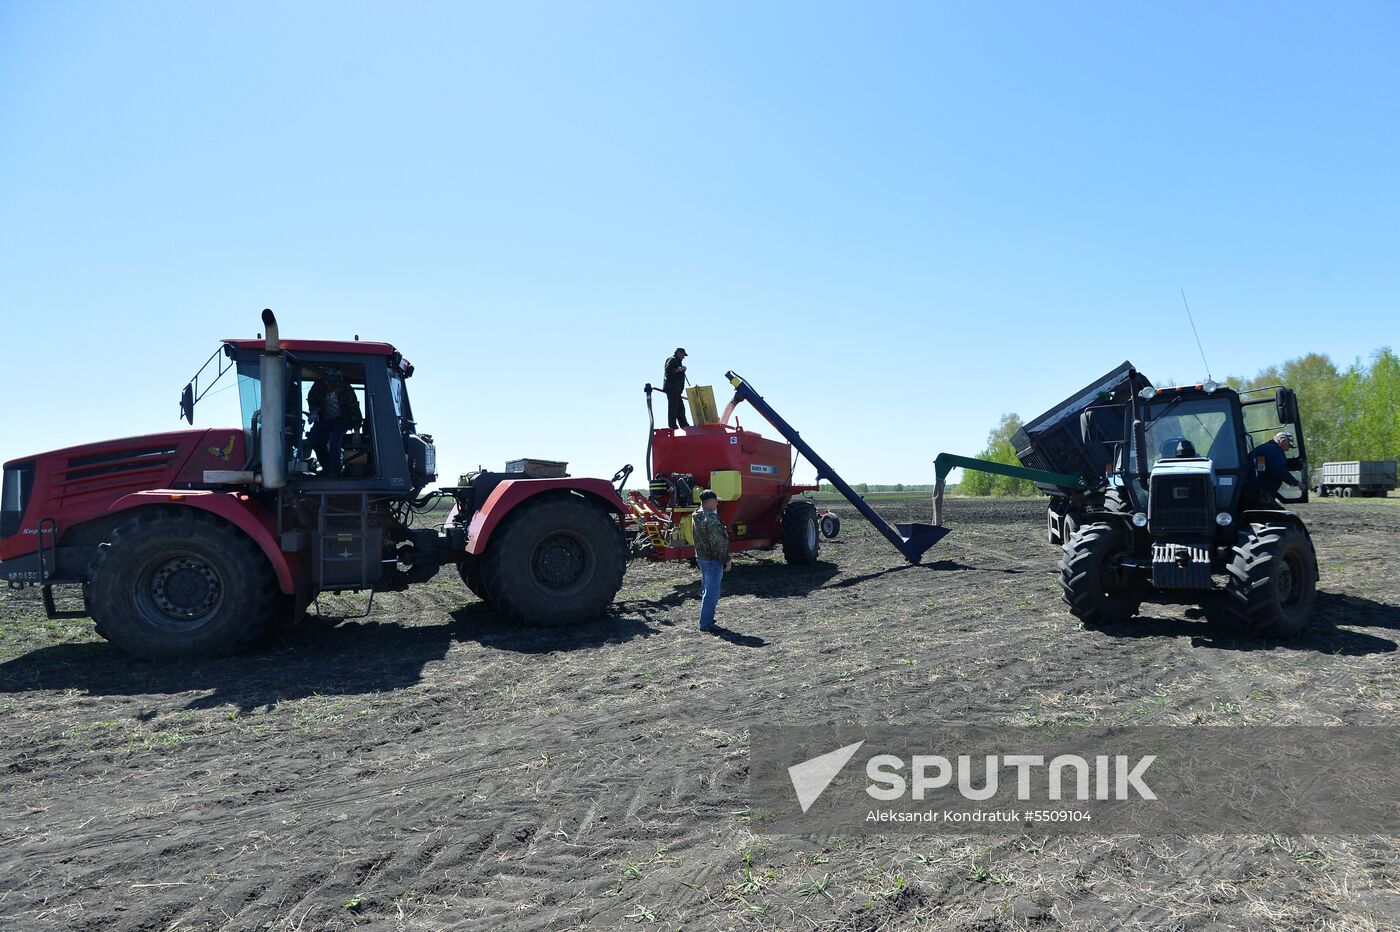 Spring sowing in Chelyabinsk Region